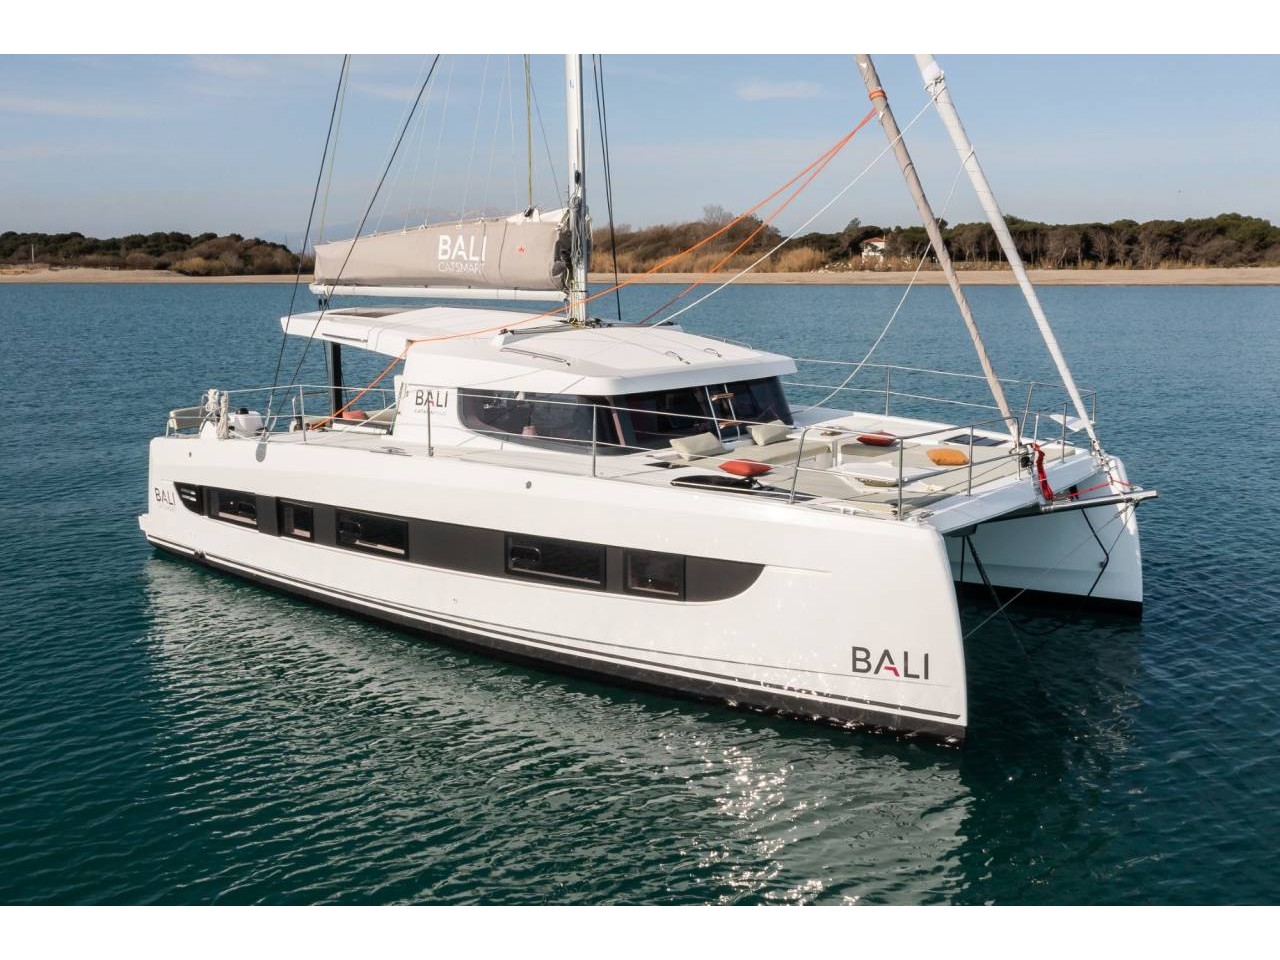 Bali Catsmart - Luxury yacht charter Sicily & Boat hire in Italy Sicily Aeolian Islands Capo d'Orlando Capo d'Orlando Marina 1